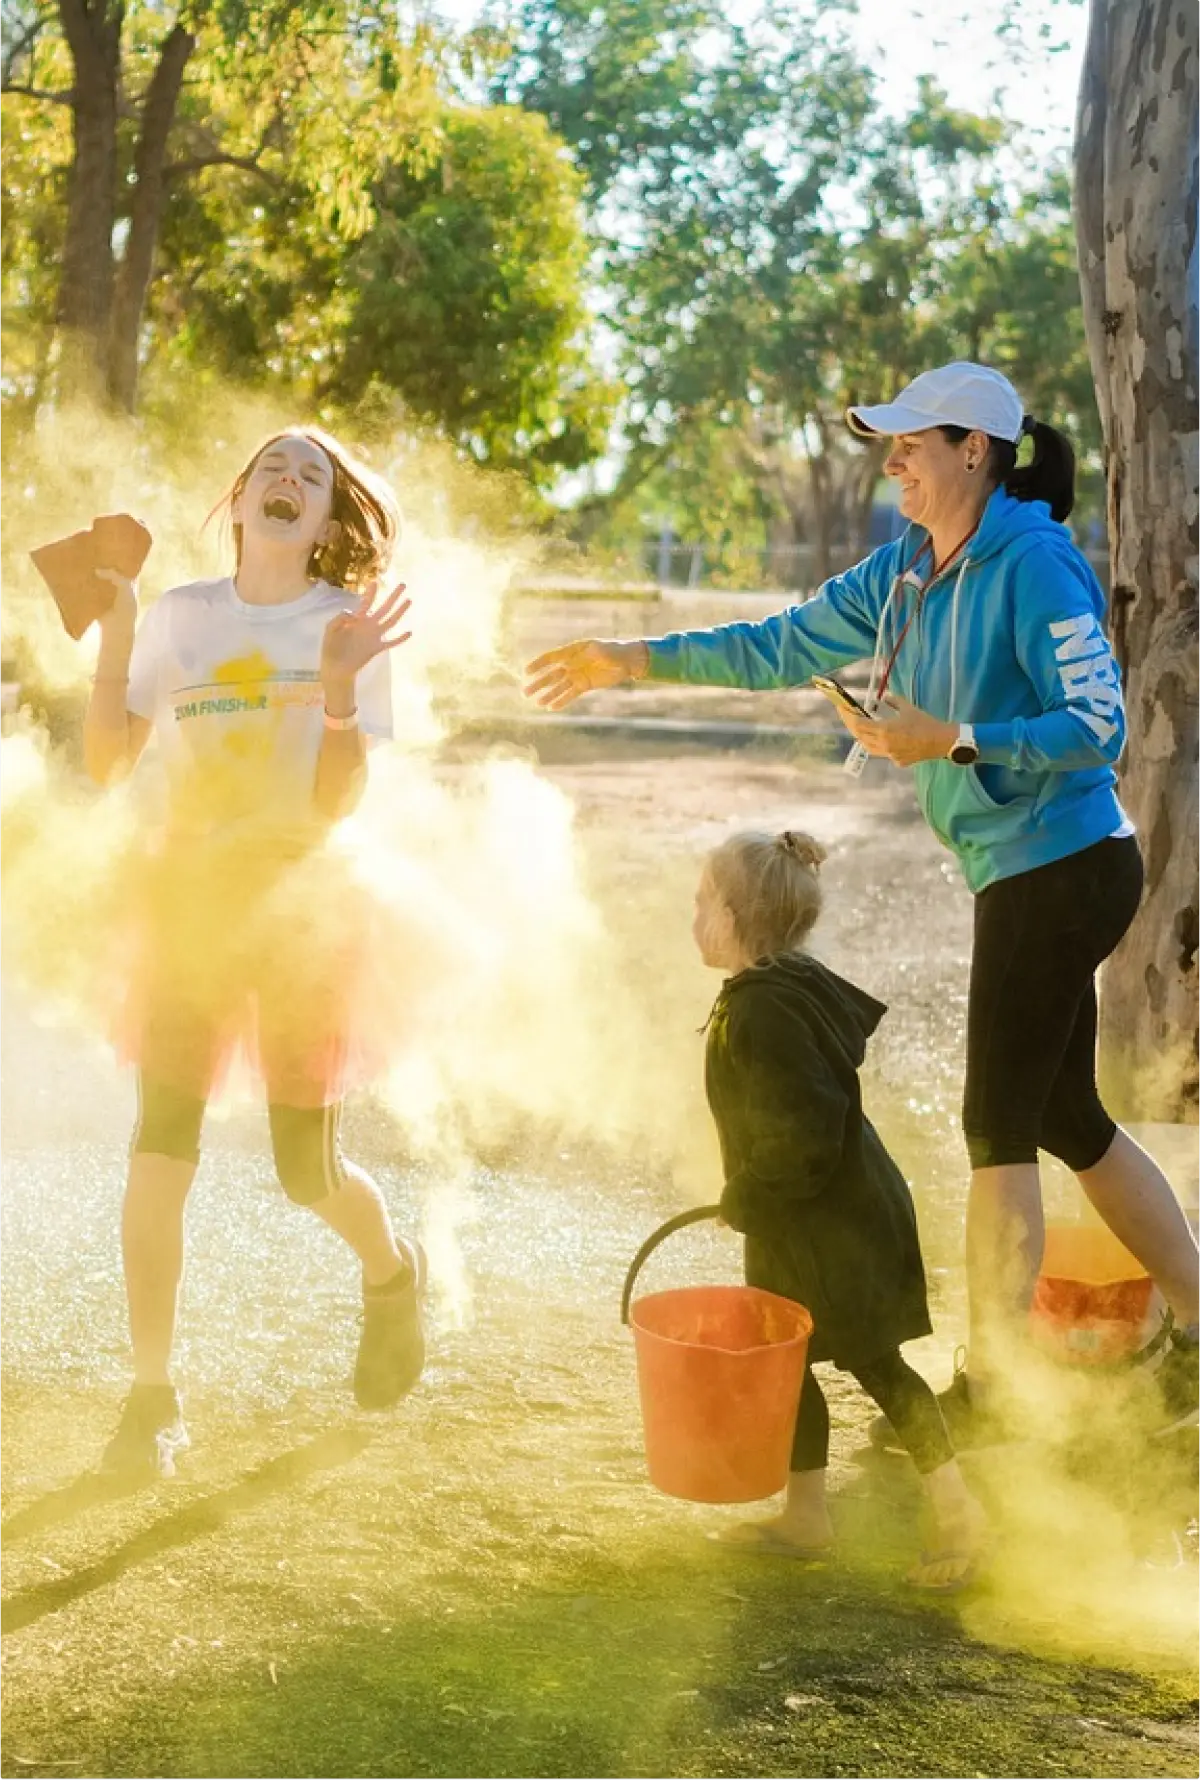 Kinder und ein Erwachsener haben Spaß bei einem Farblauf, bei dem gelbes Pulver in die Luft geworfen wird und eine lebendige Wolke erzeugt.